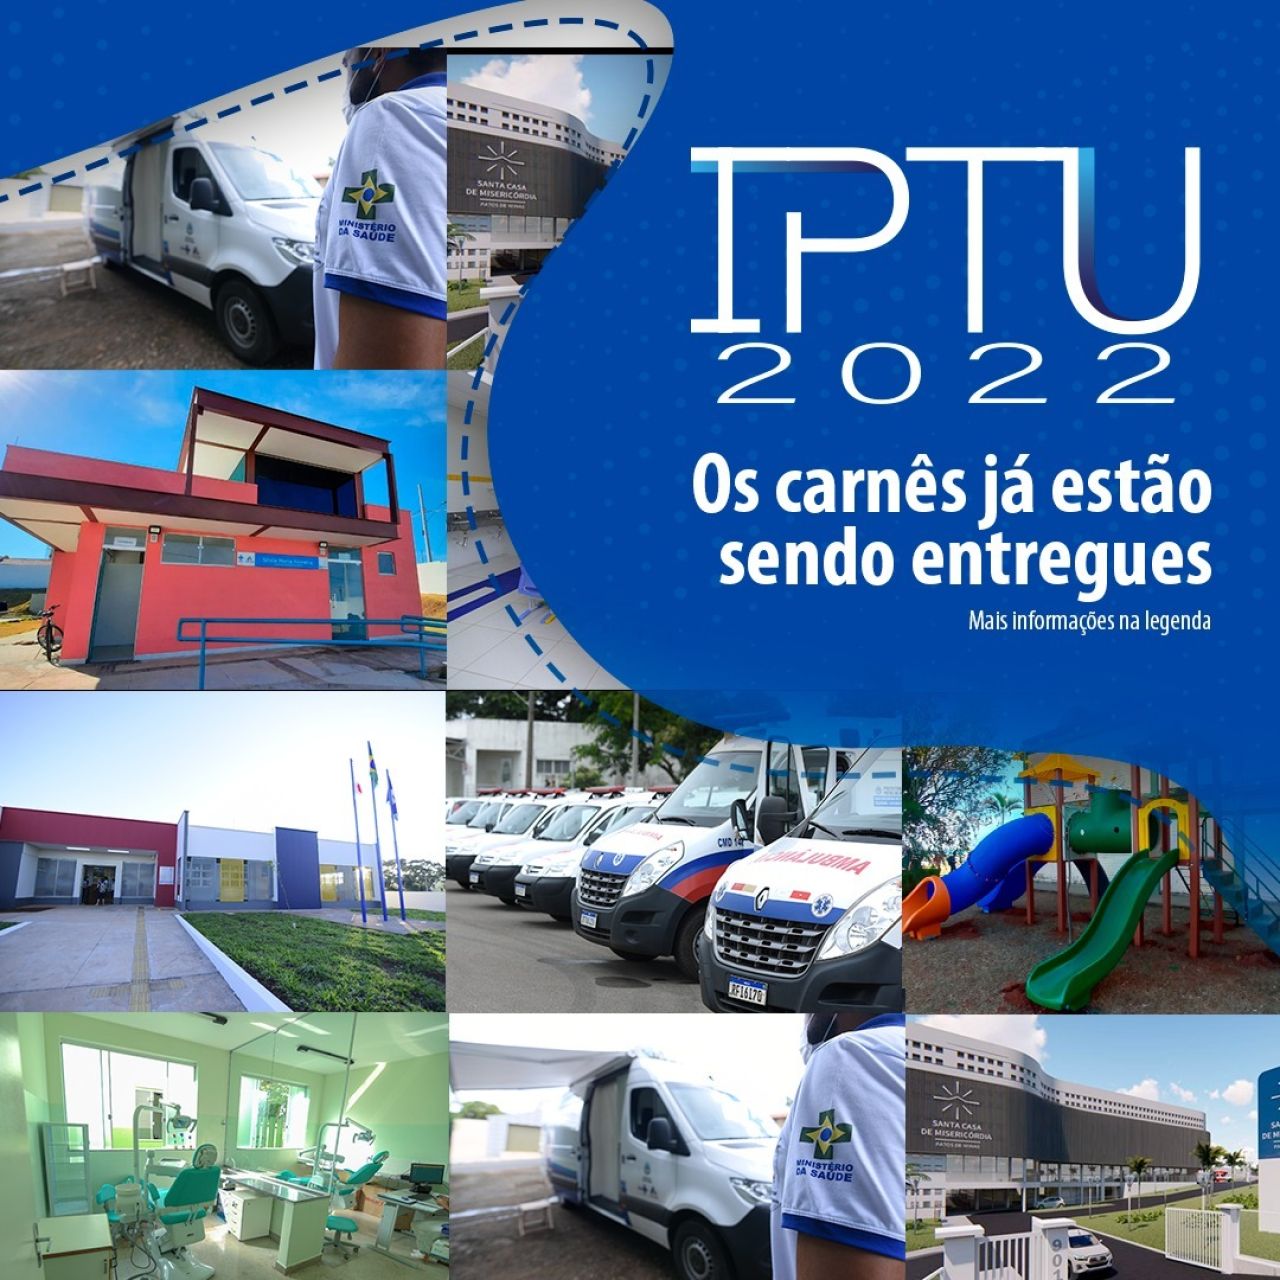 Carnê de IPTU 2022 começa a ser entregue em Patos de Minas